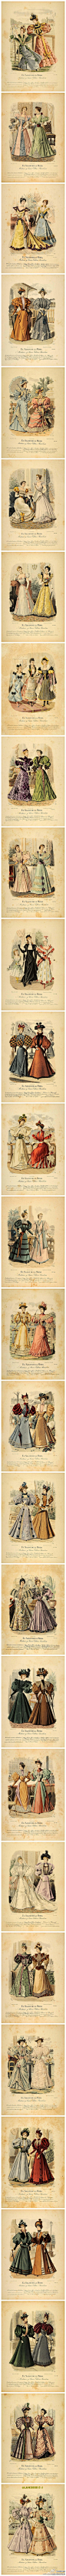 维多利亚时期的服饰图集